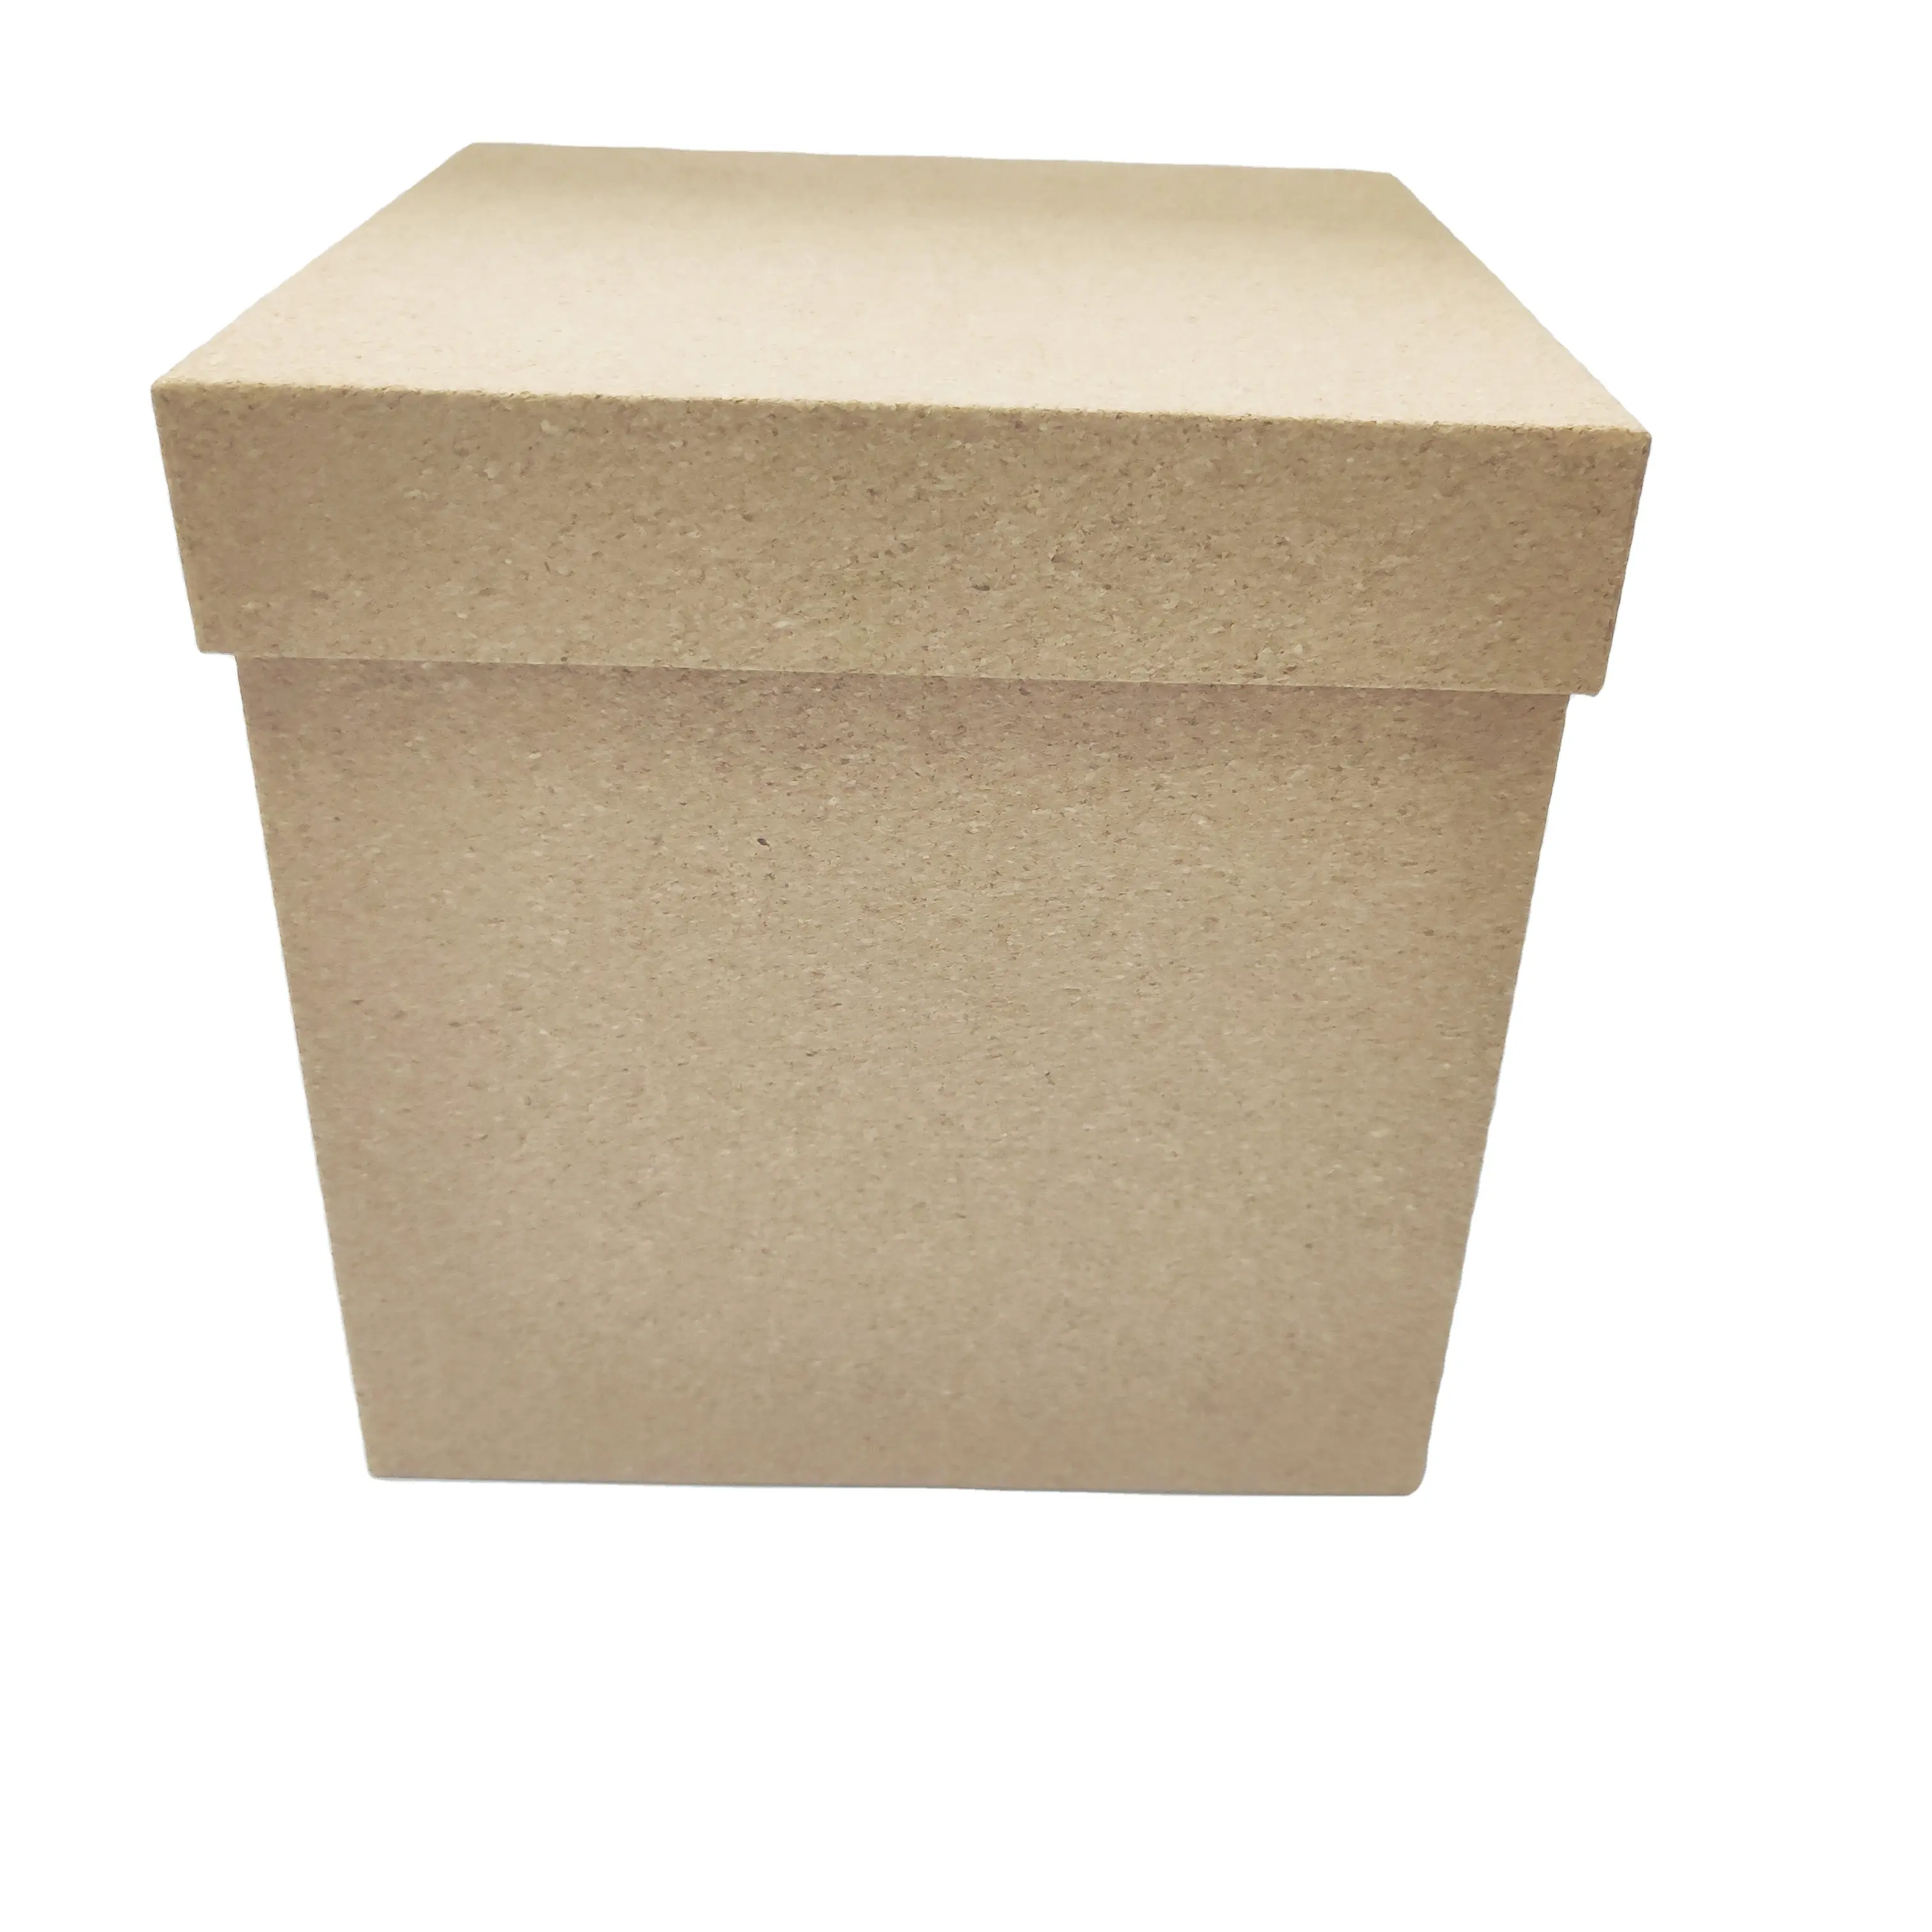 Großvolumige Deckel Kork verpacktes Papier Aufbewahrung sbox Papier Geschenk boxen Futter von Pappe